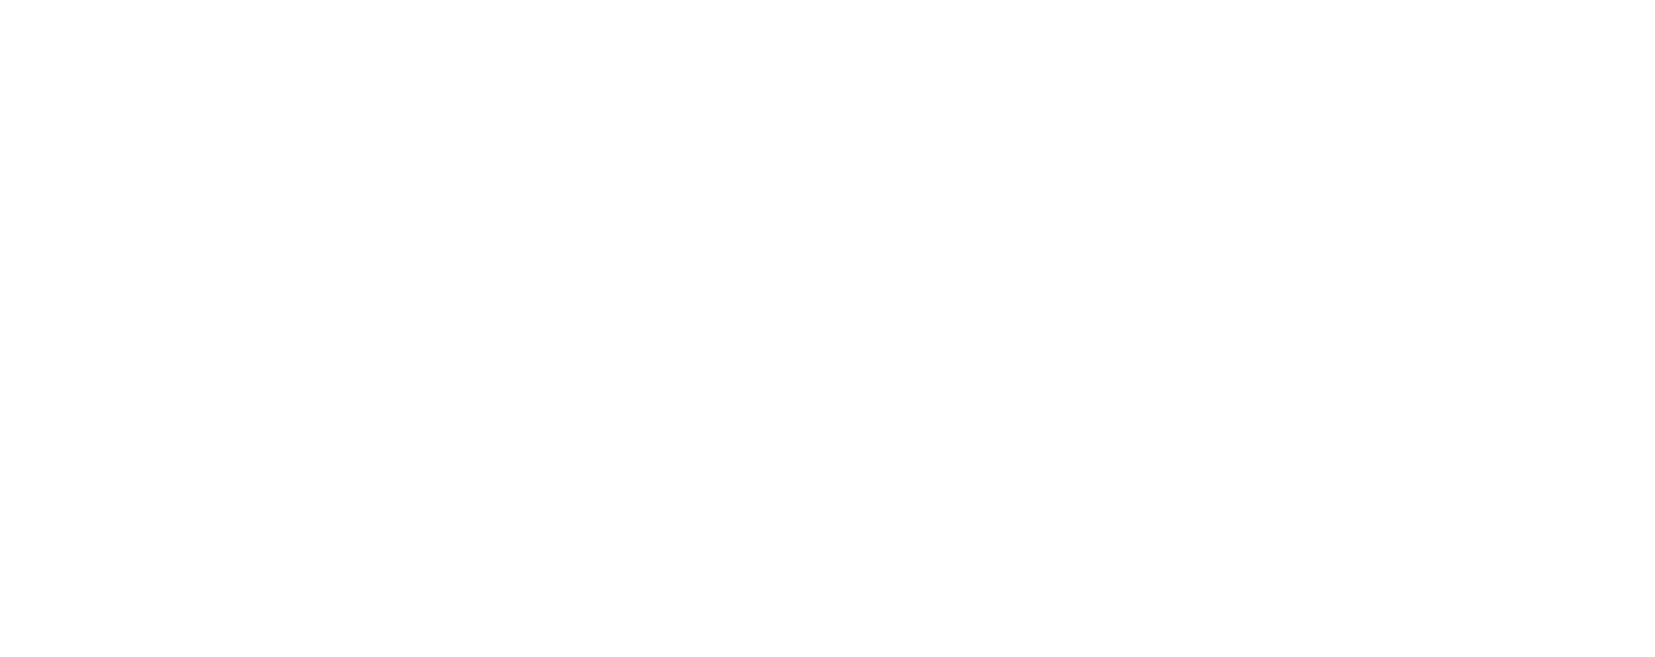 Aston Martin
 logo large for dark backgrounds (transparent PNG)